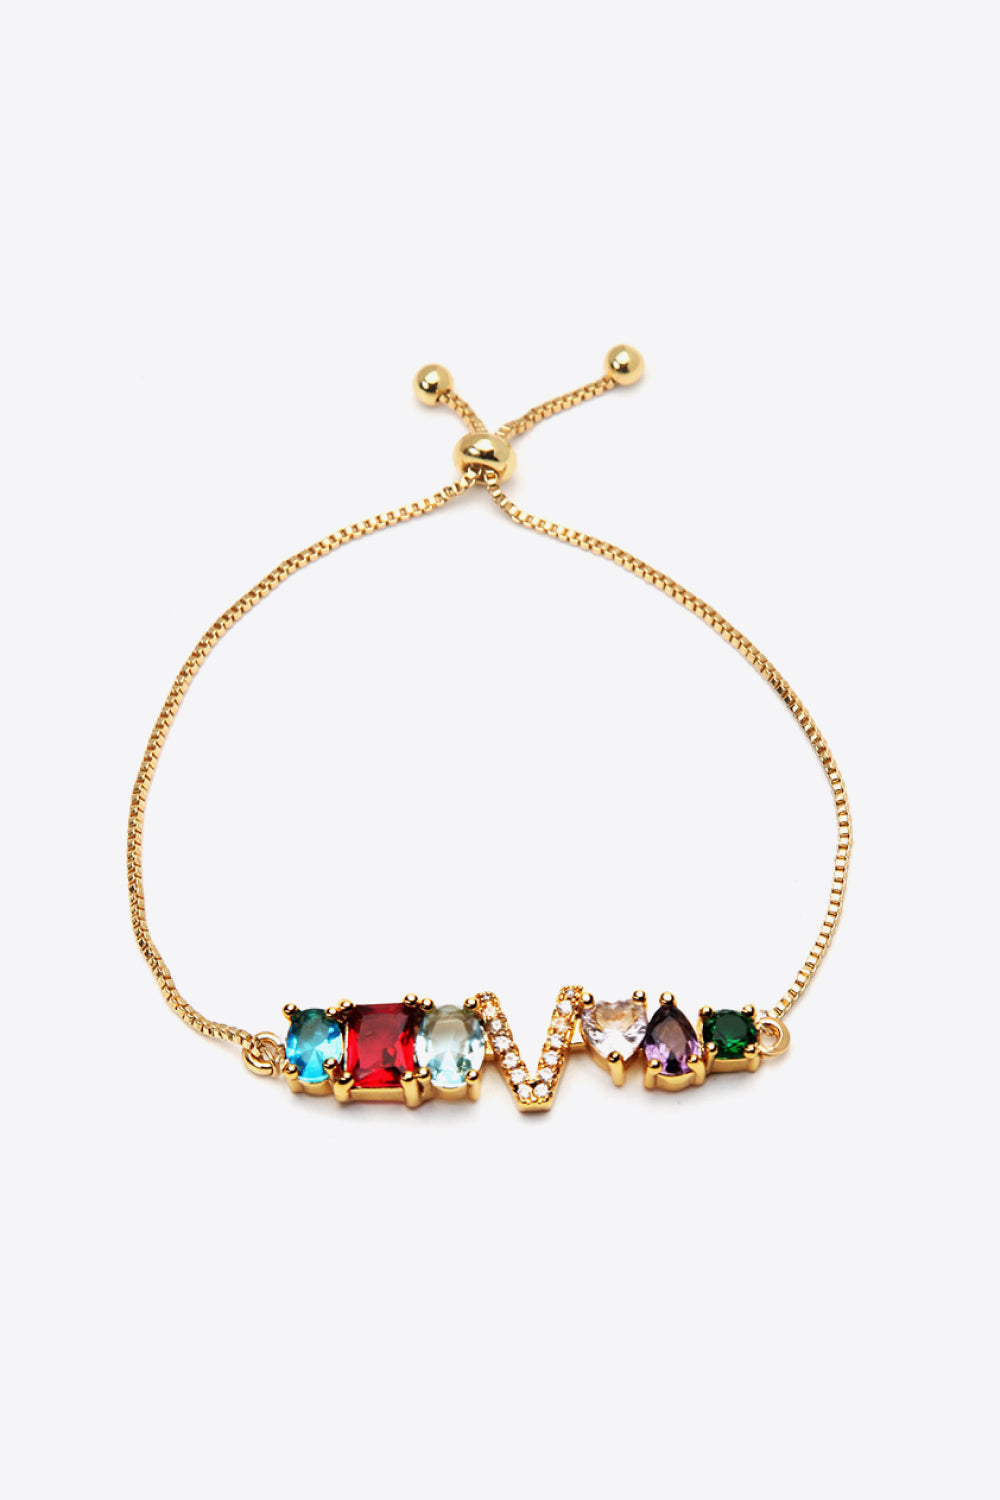 U to Z Zircon Bracelet - V / One Size - Women’s Jewelry - Bracelets - 4 - 2024